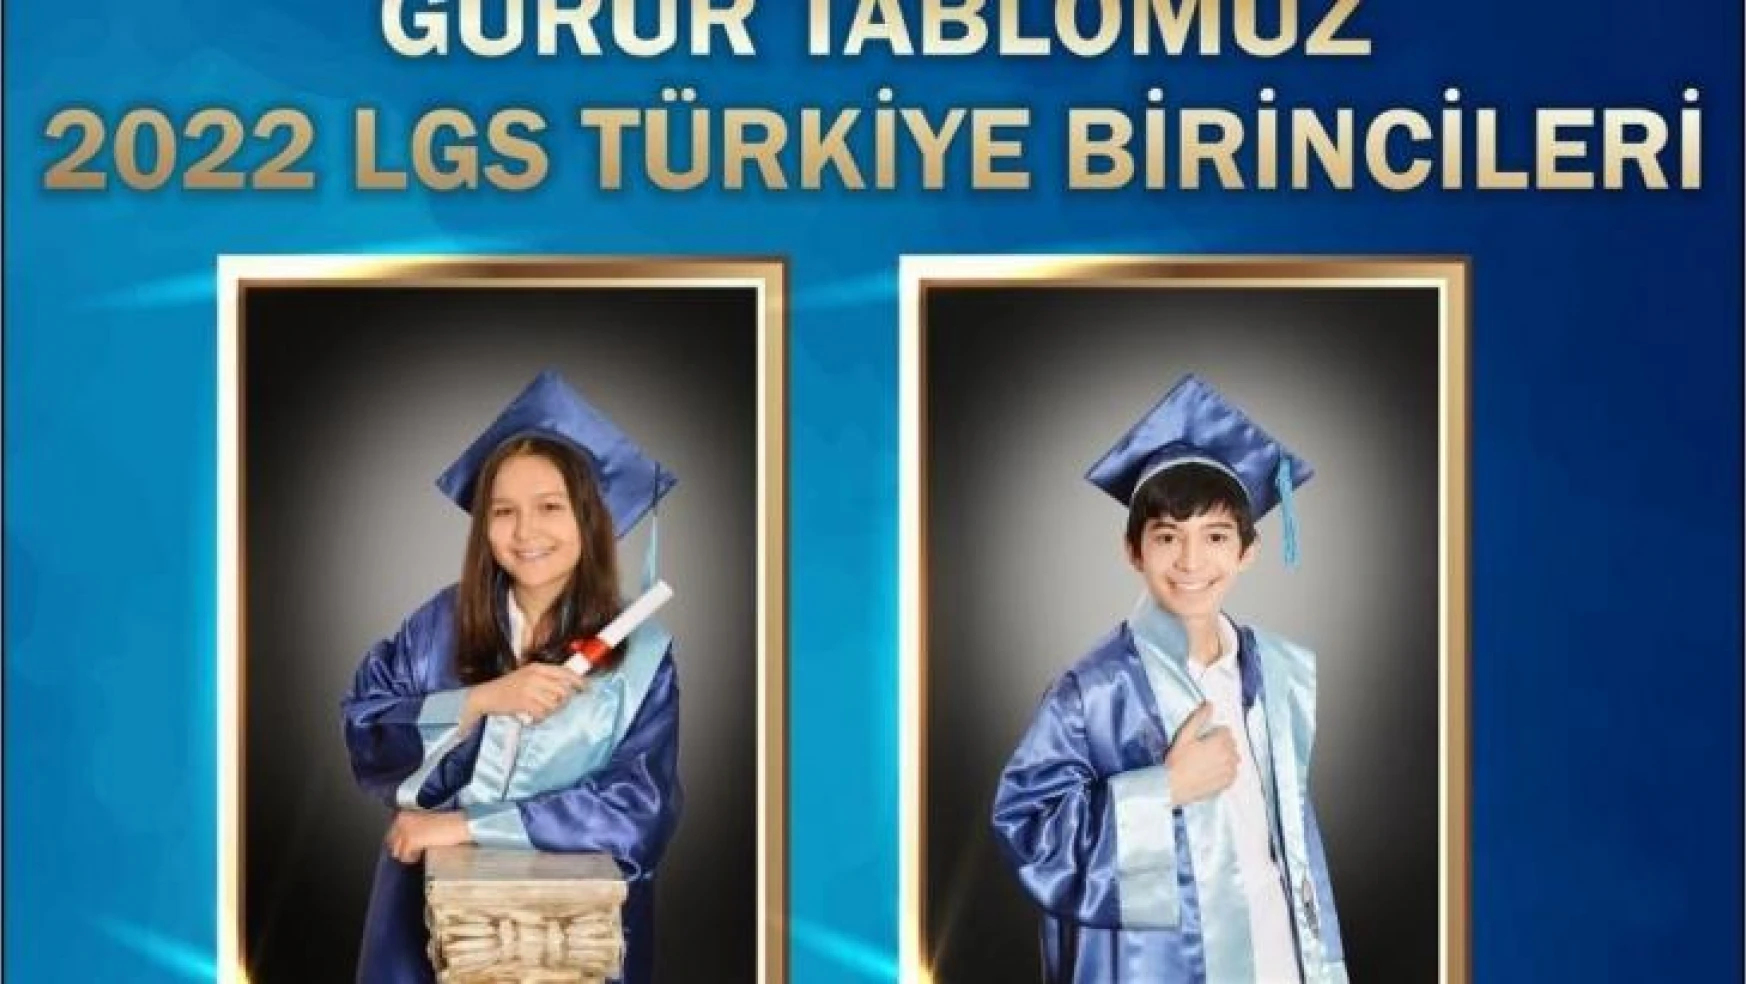 Gazi Üniversitesi Vakfı Özel Okulları öğrencileri LGS Türkiye birincisi oldu